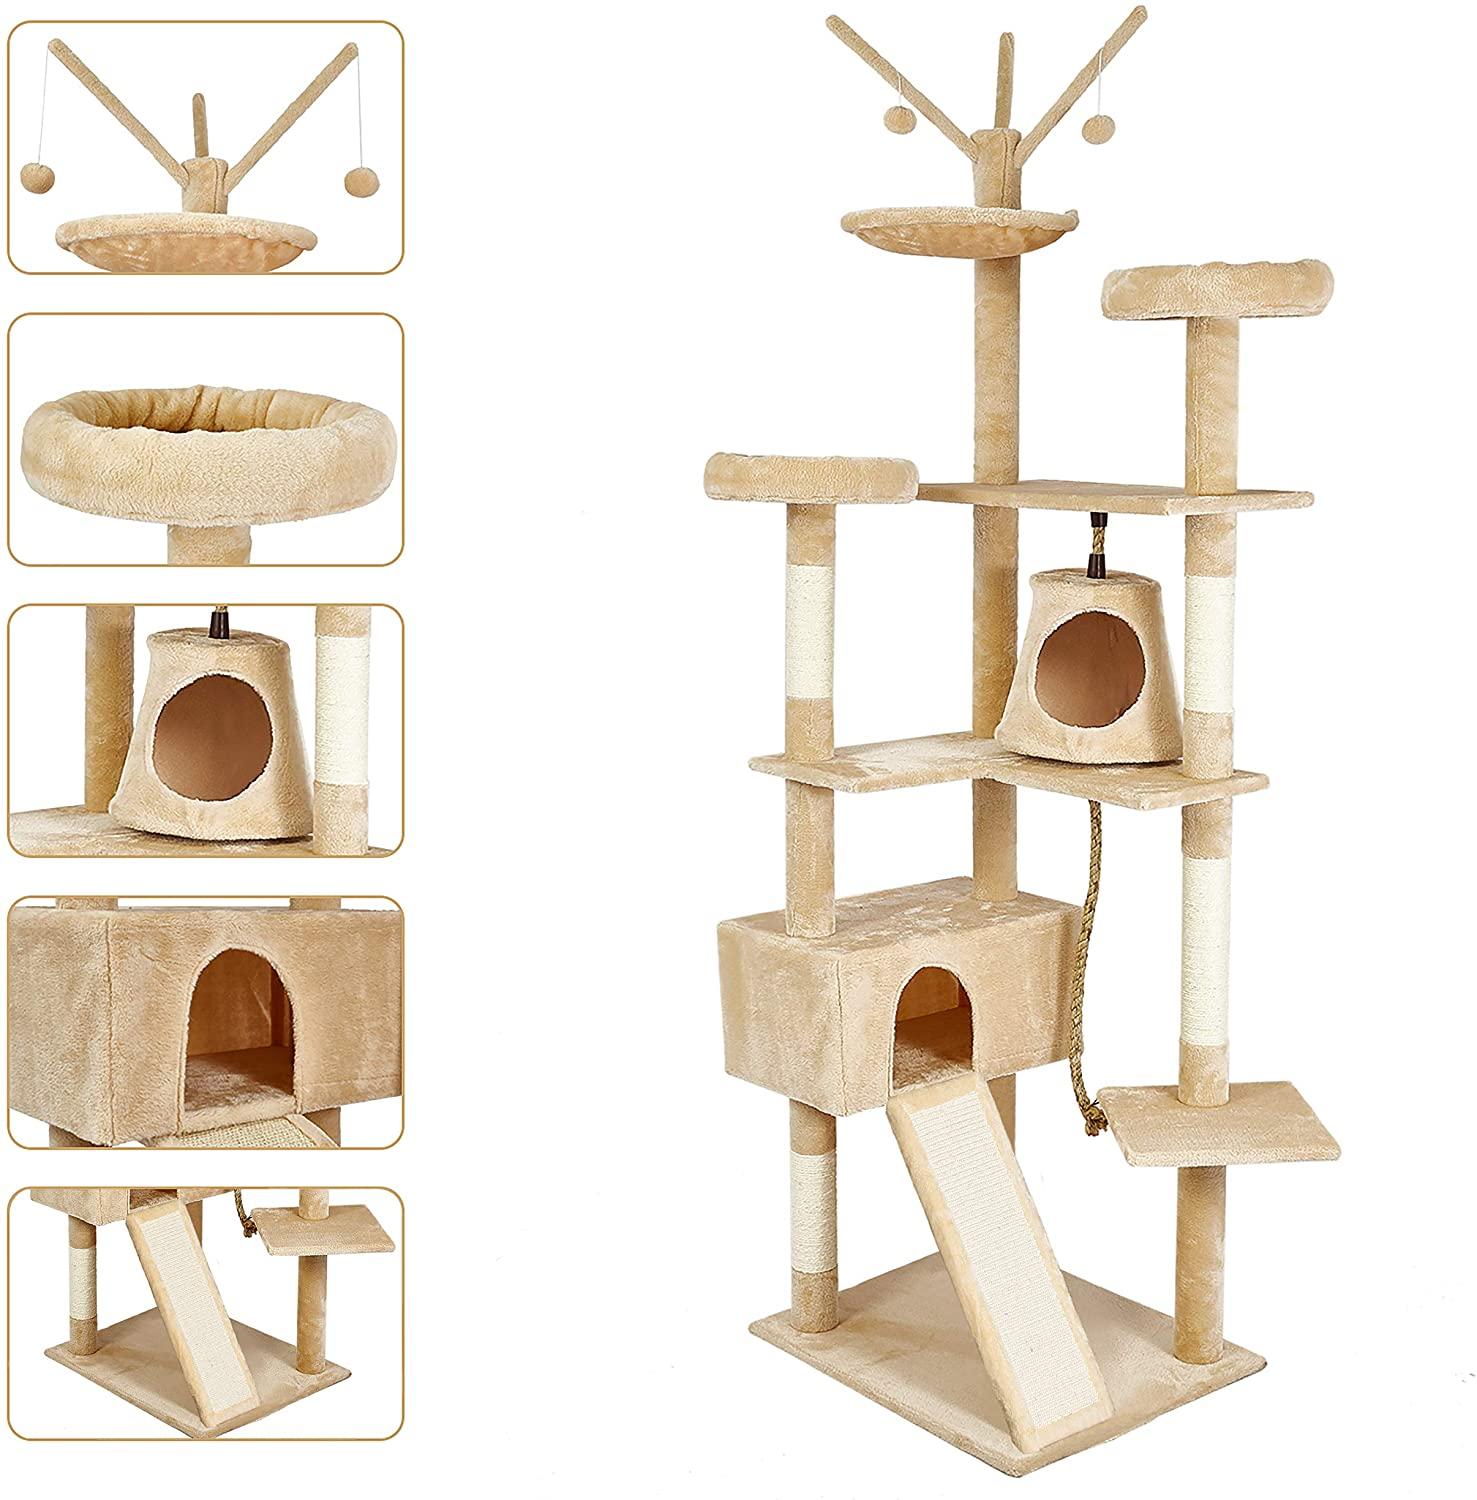 Cadre-d-escalade-type-arbre-chats-planche-gratter-en-sisal-pour-chaton-jouets-6-niveaux-avec